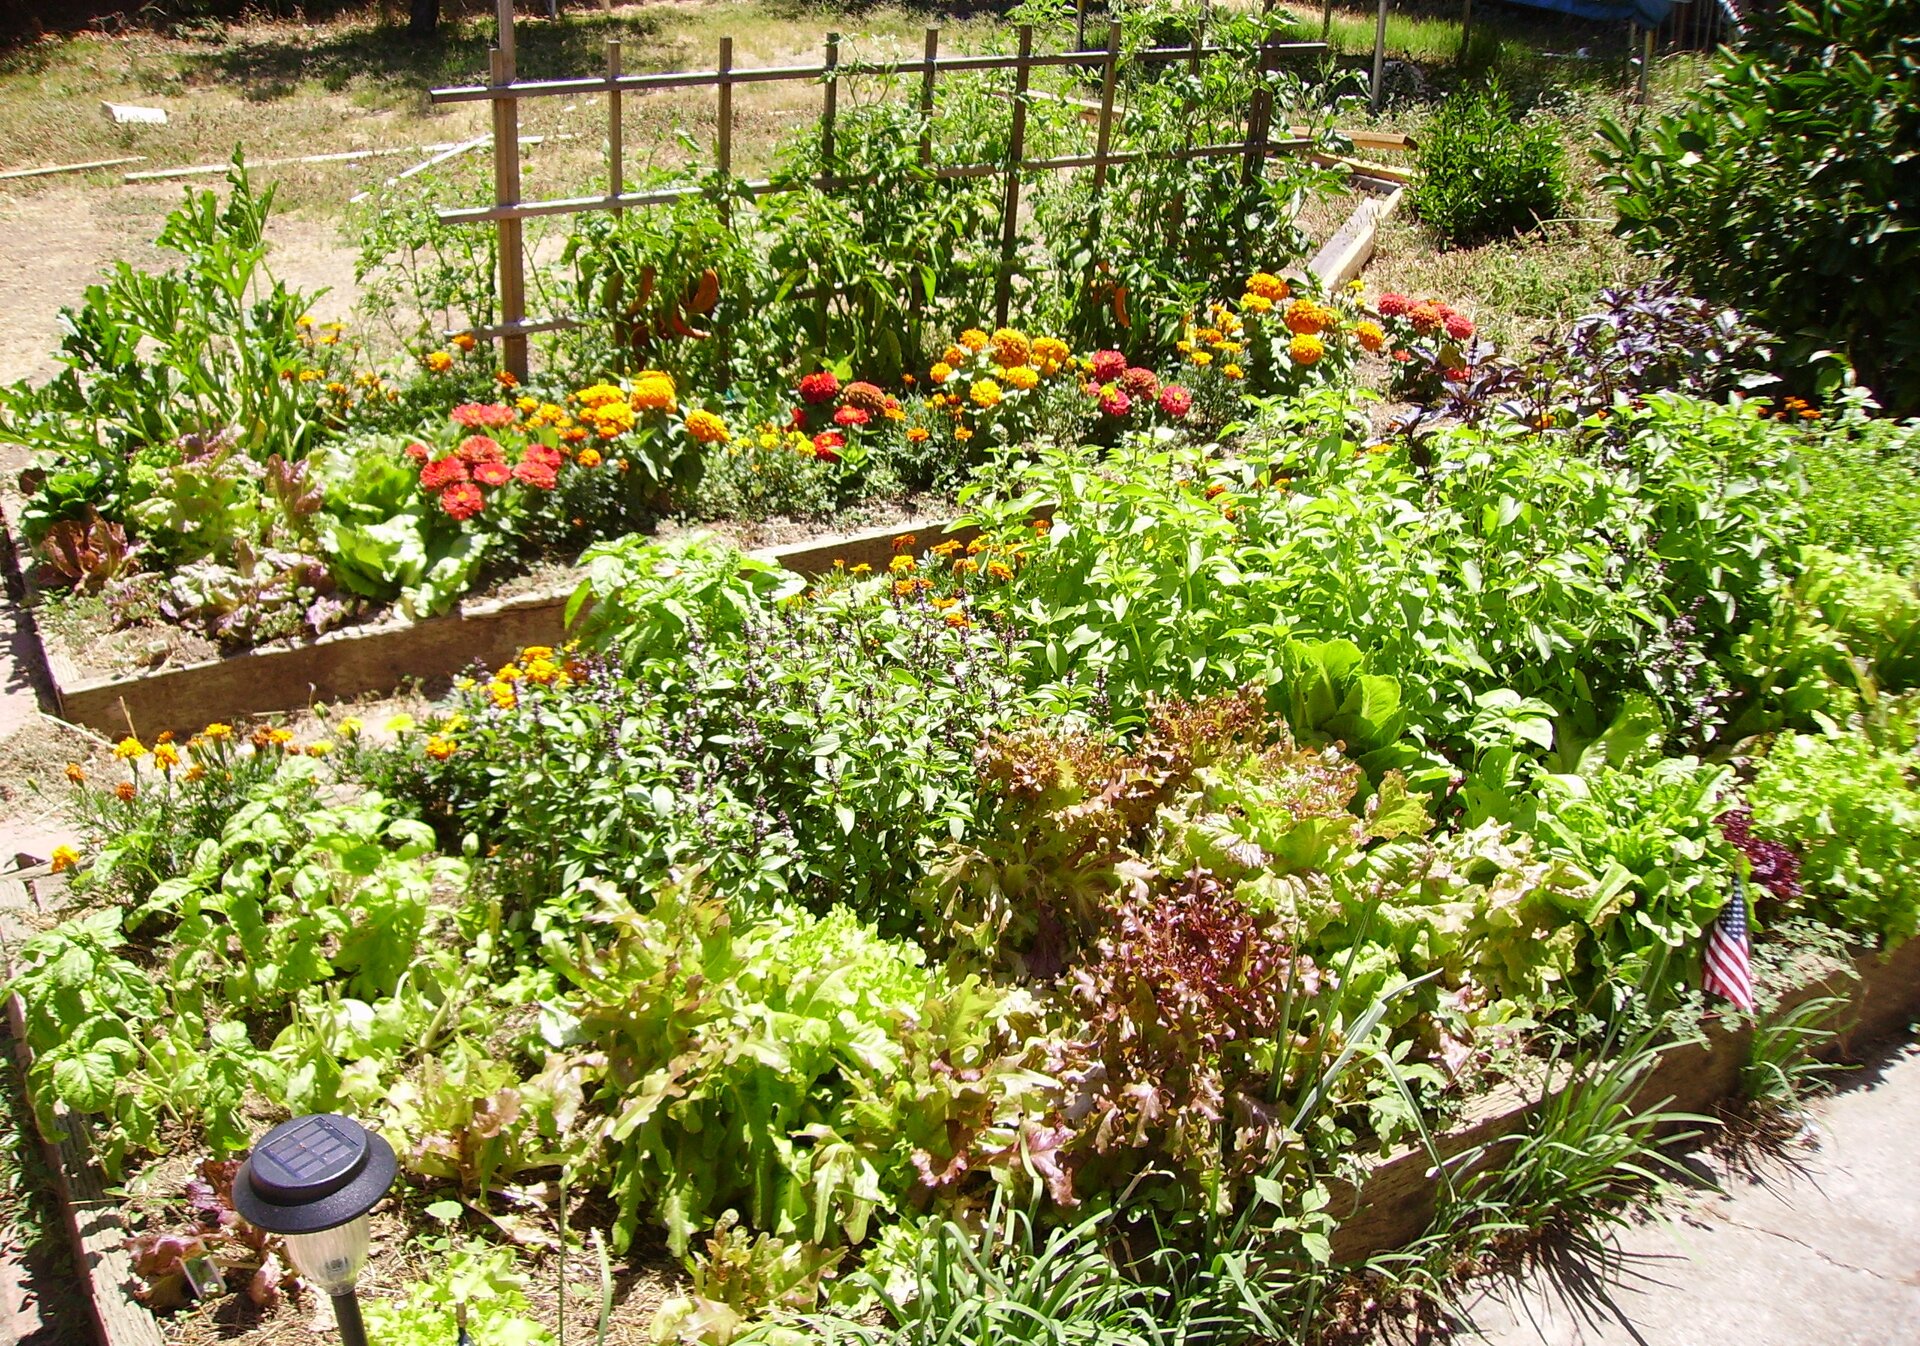 Fotografia prezentuje fragment ogródka działkowego z grządkami żyznych warzyw zielonych.